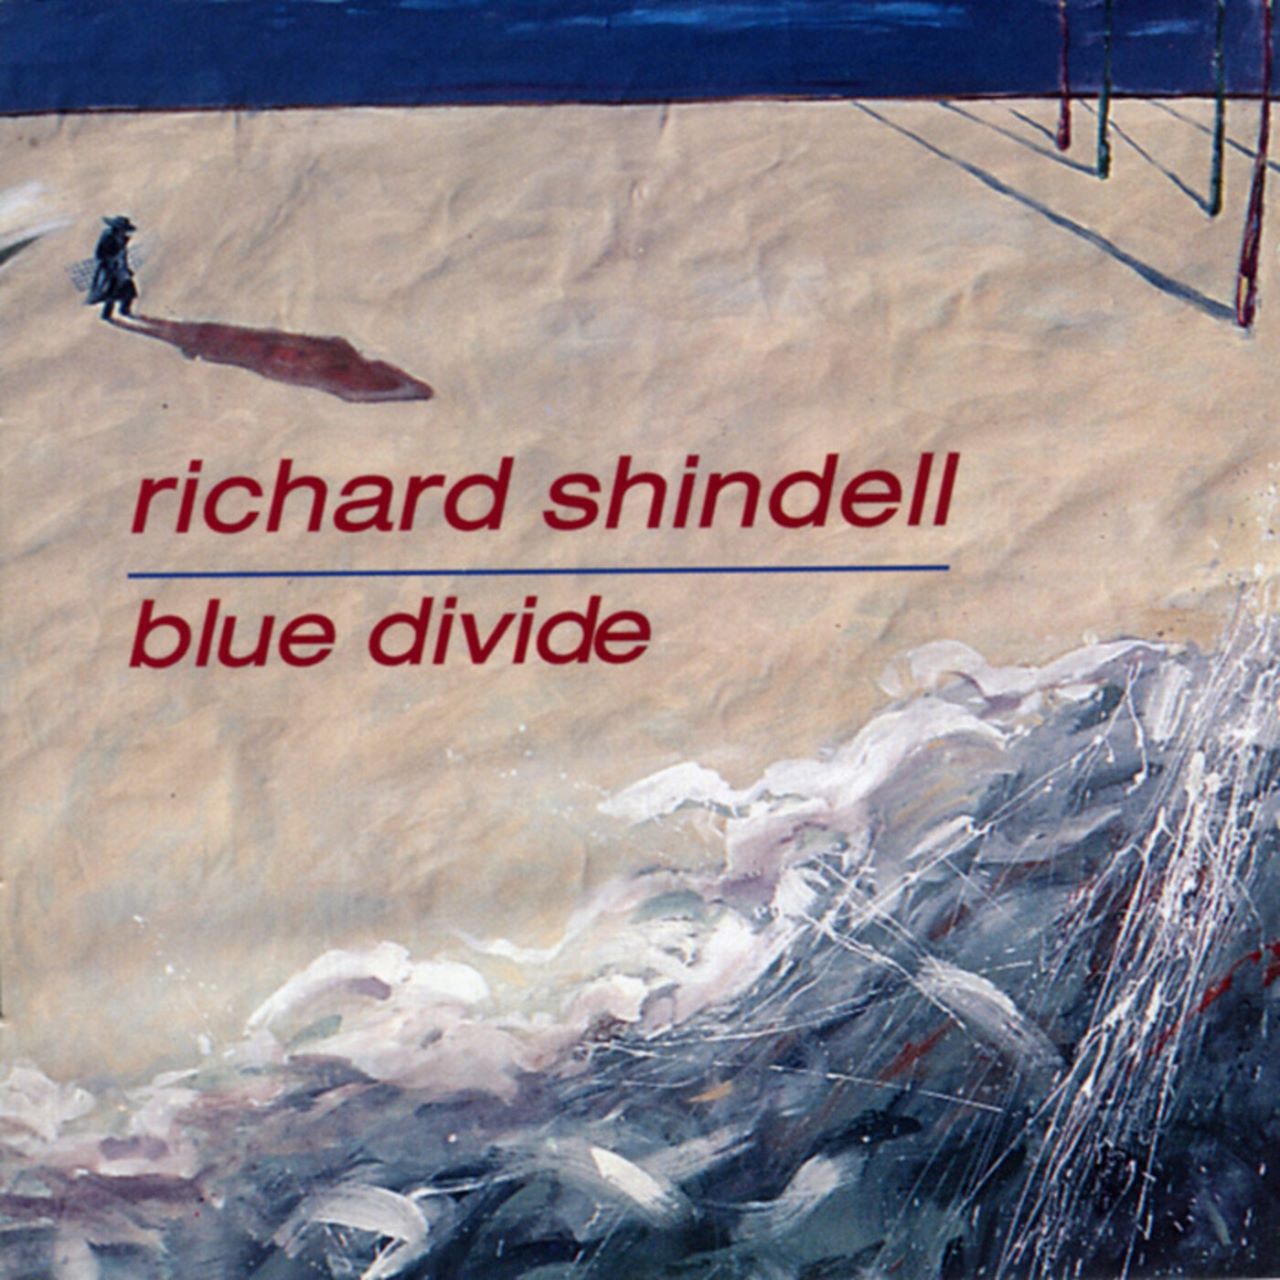 Richard Shindell - Blue divide cover album